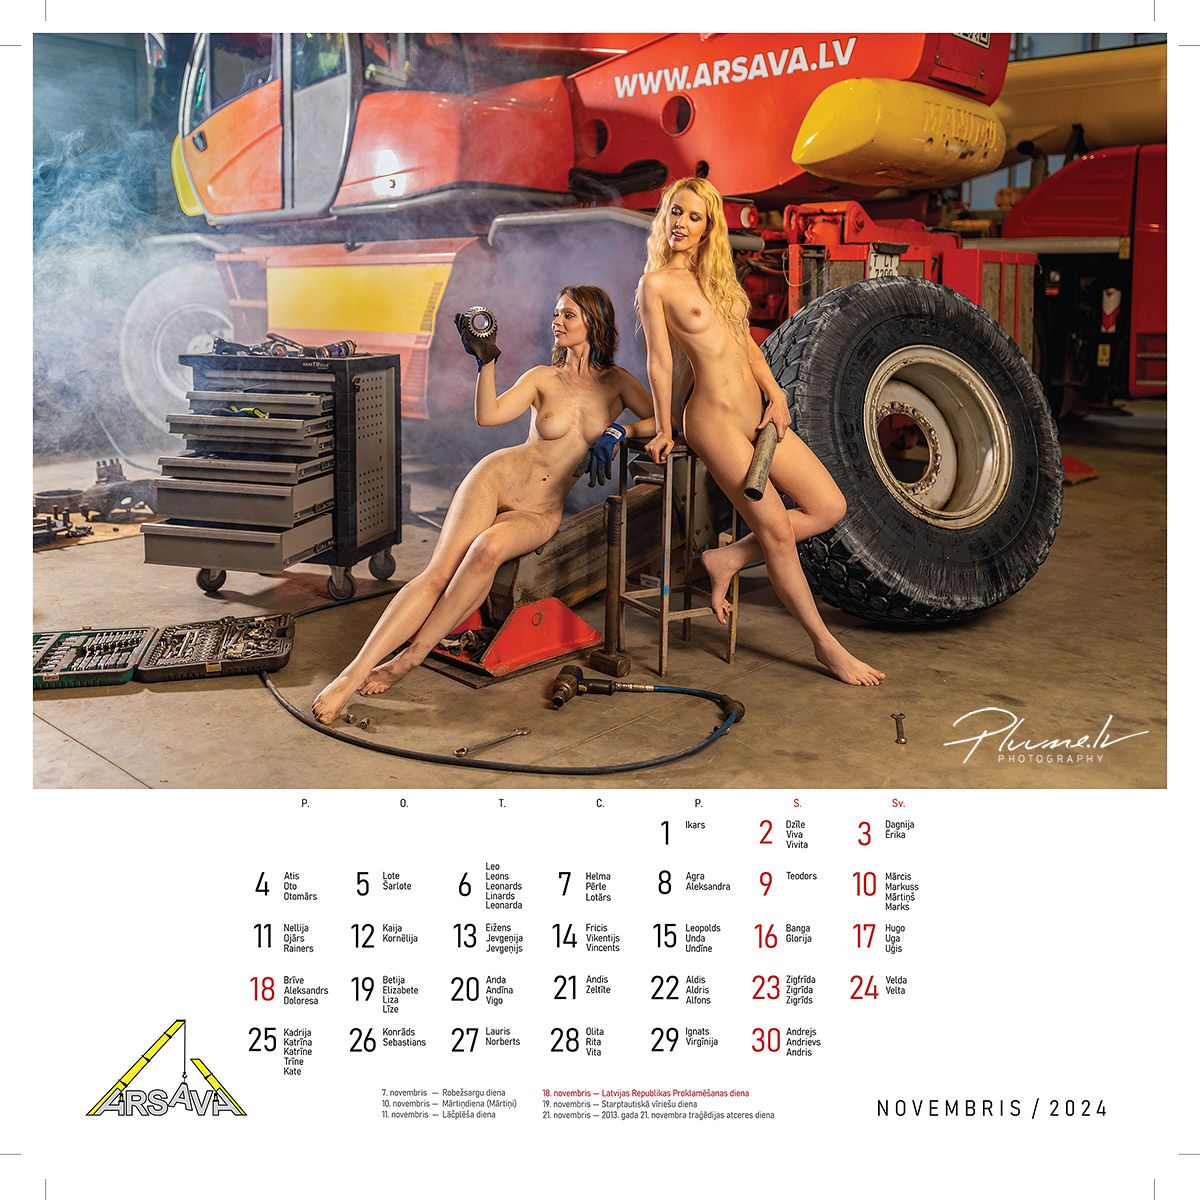 Mārtiņš Plūme | Erotisks kailfoto kalendārs 2024 gadam, ARSAVA | Fotografs Martins Plume kailfoto kalendars kailfoto fotografs 13